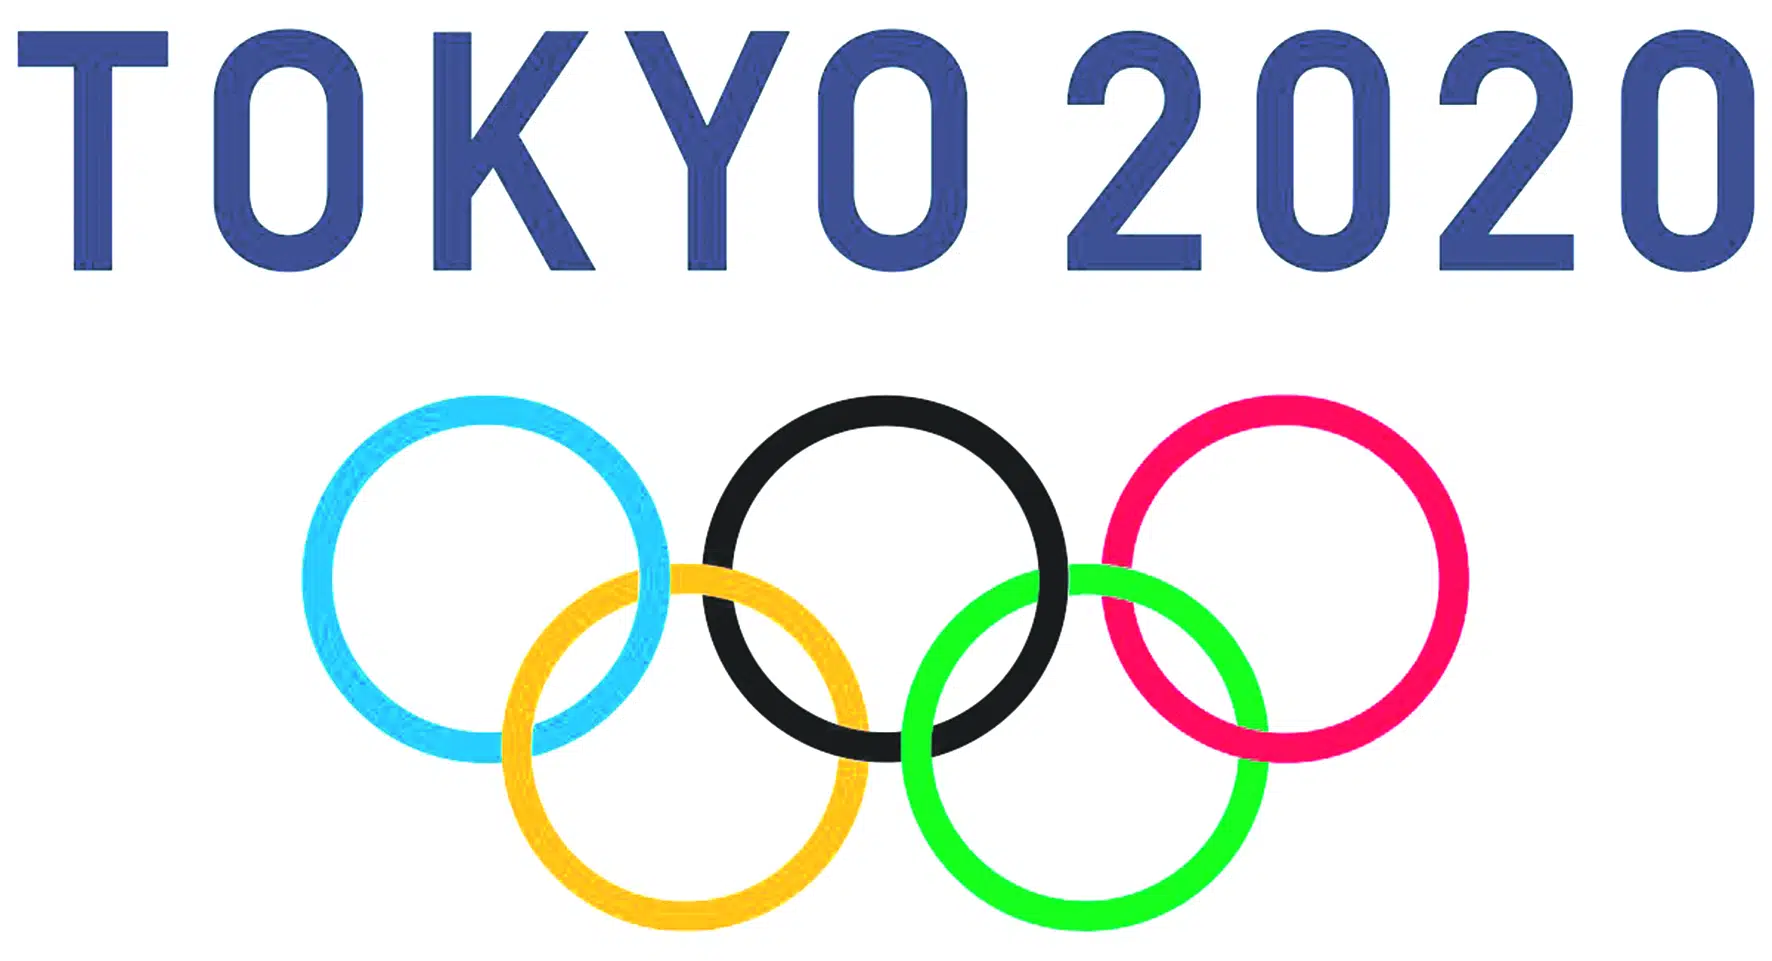 IO Tokio 2020/21: Klasyfikacja medalowa